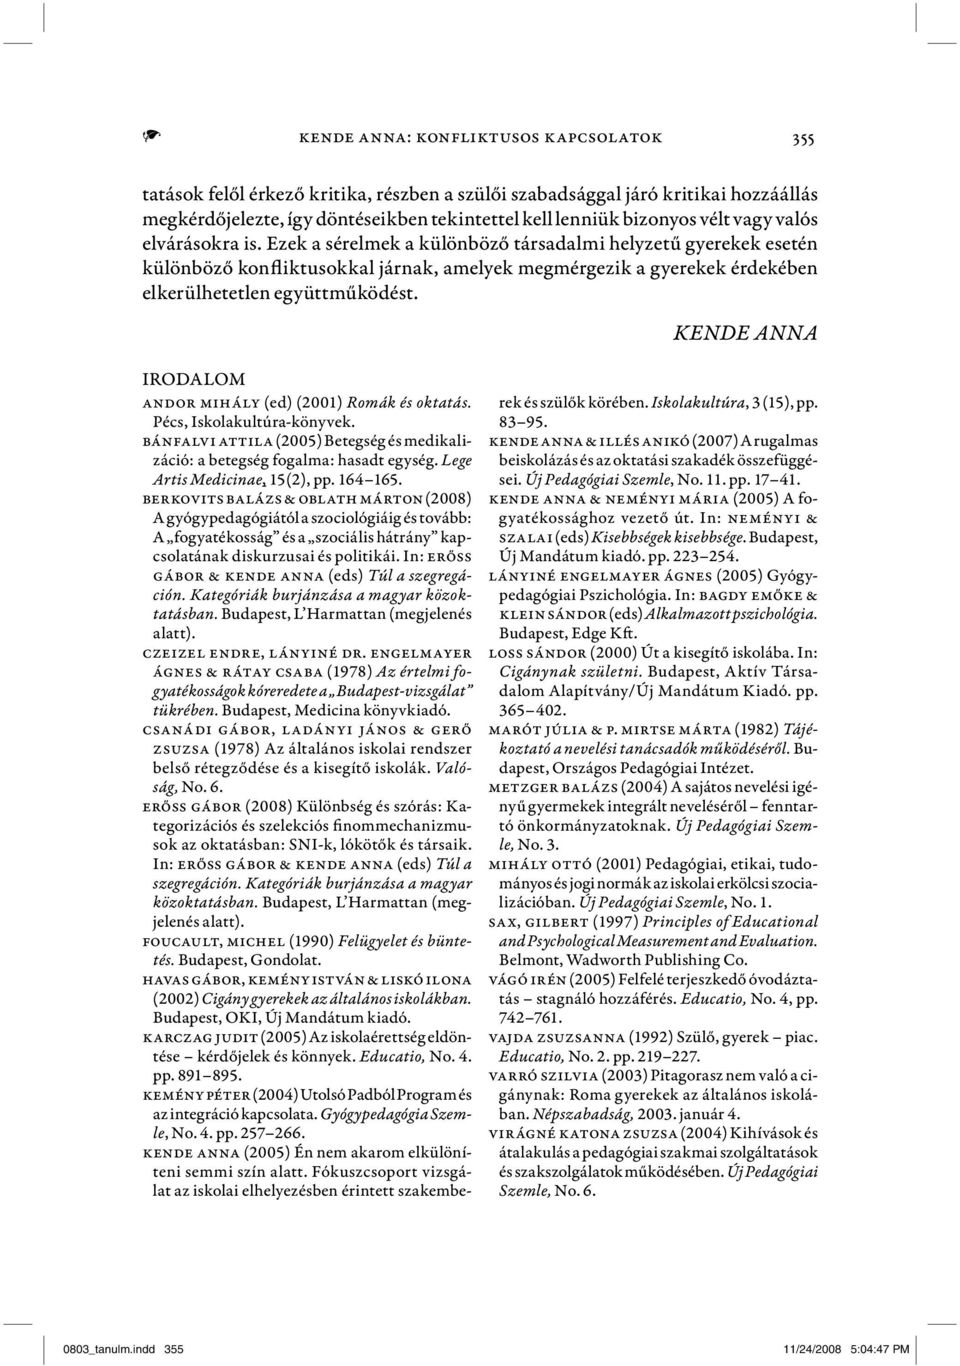 KENDE ANNA IRODALOM Andor Mihály (ed) (2001) Romák és oktatás. Pécs, Iskolakultúra-könyvek. Bánfalvi Attila (2005) Betegség és medikalizáció: a betegség fogalma: hasadt egység.